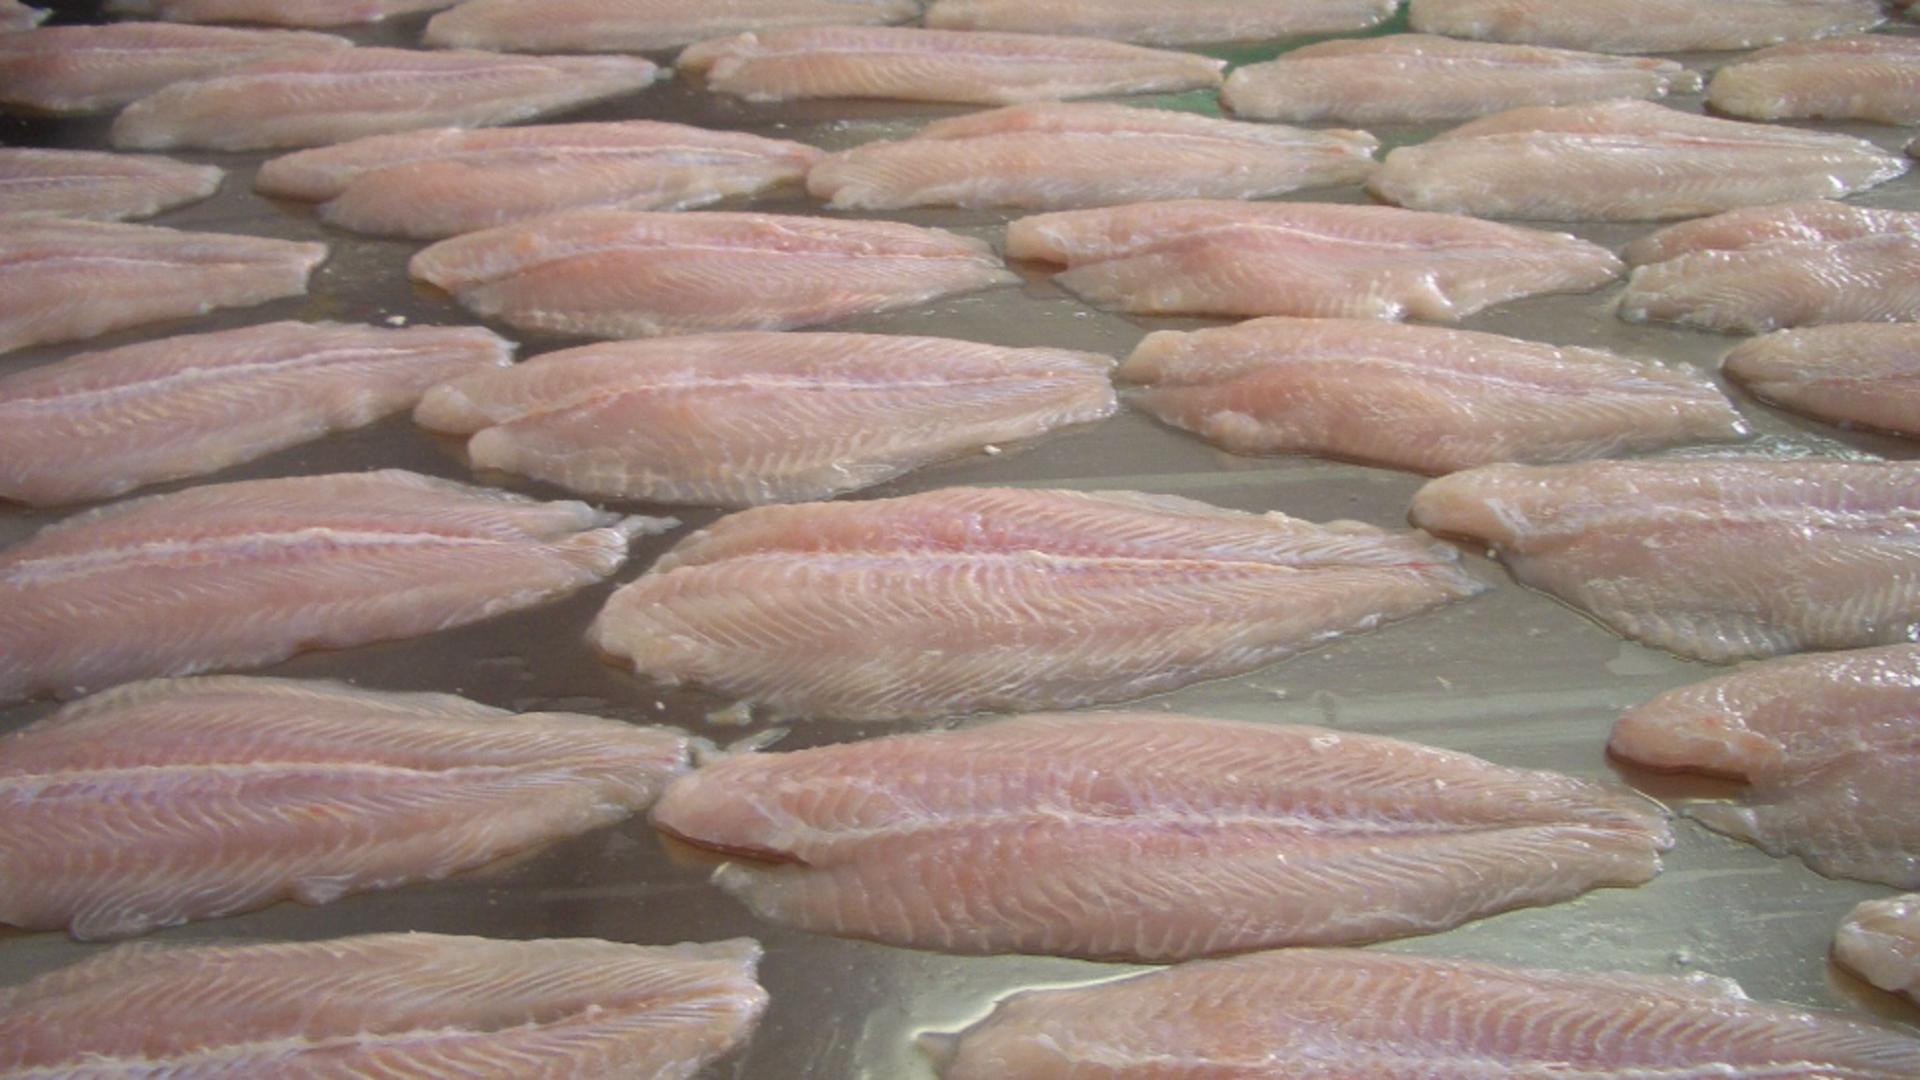 Cel mai toxic pește vândut în România. Mulți îl consumă pentru că e ieftin, fără să știe cât este de periculos